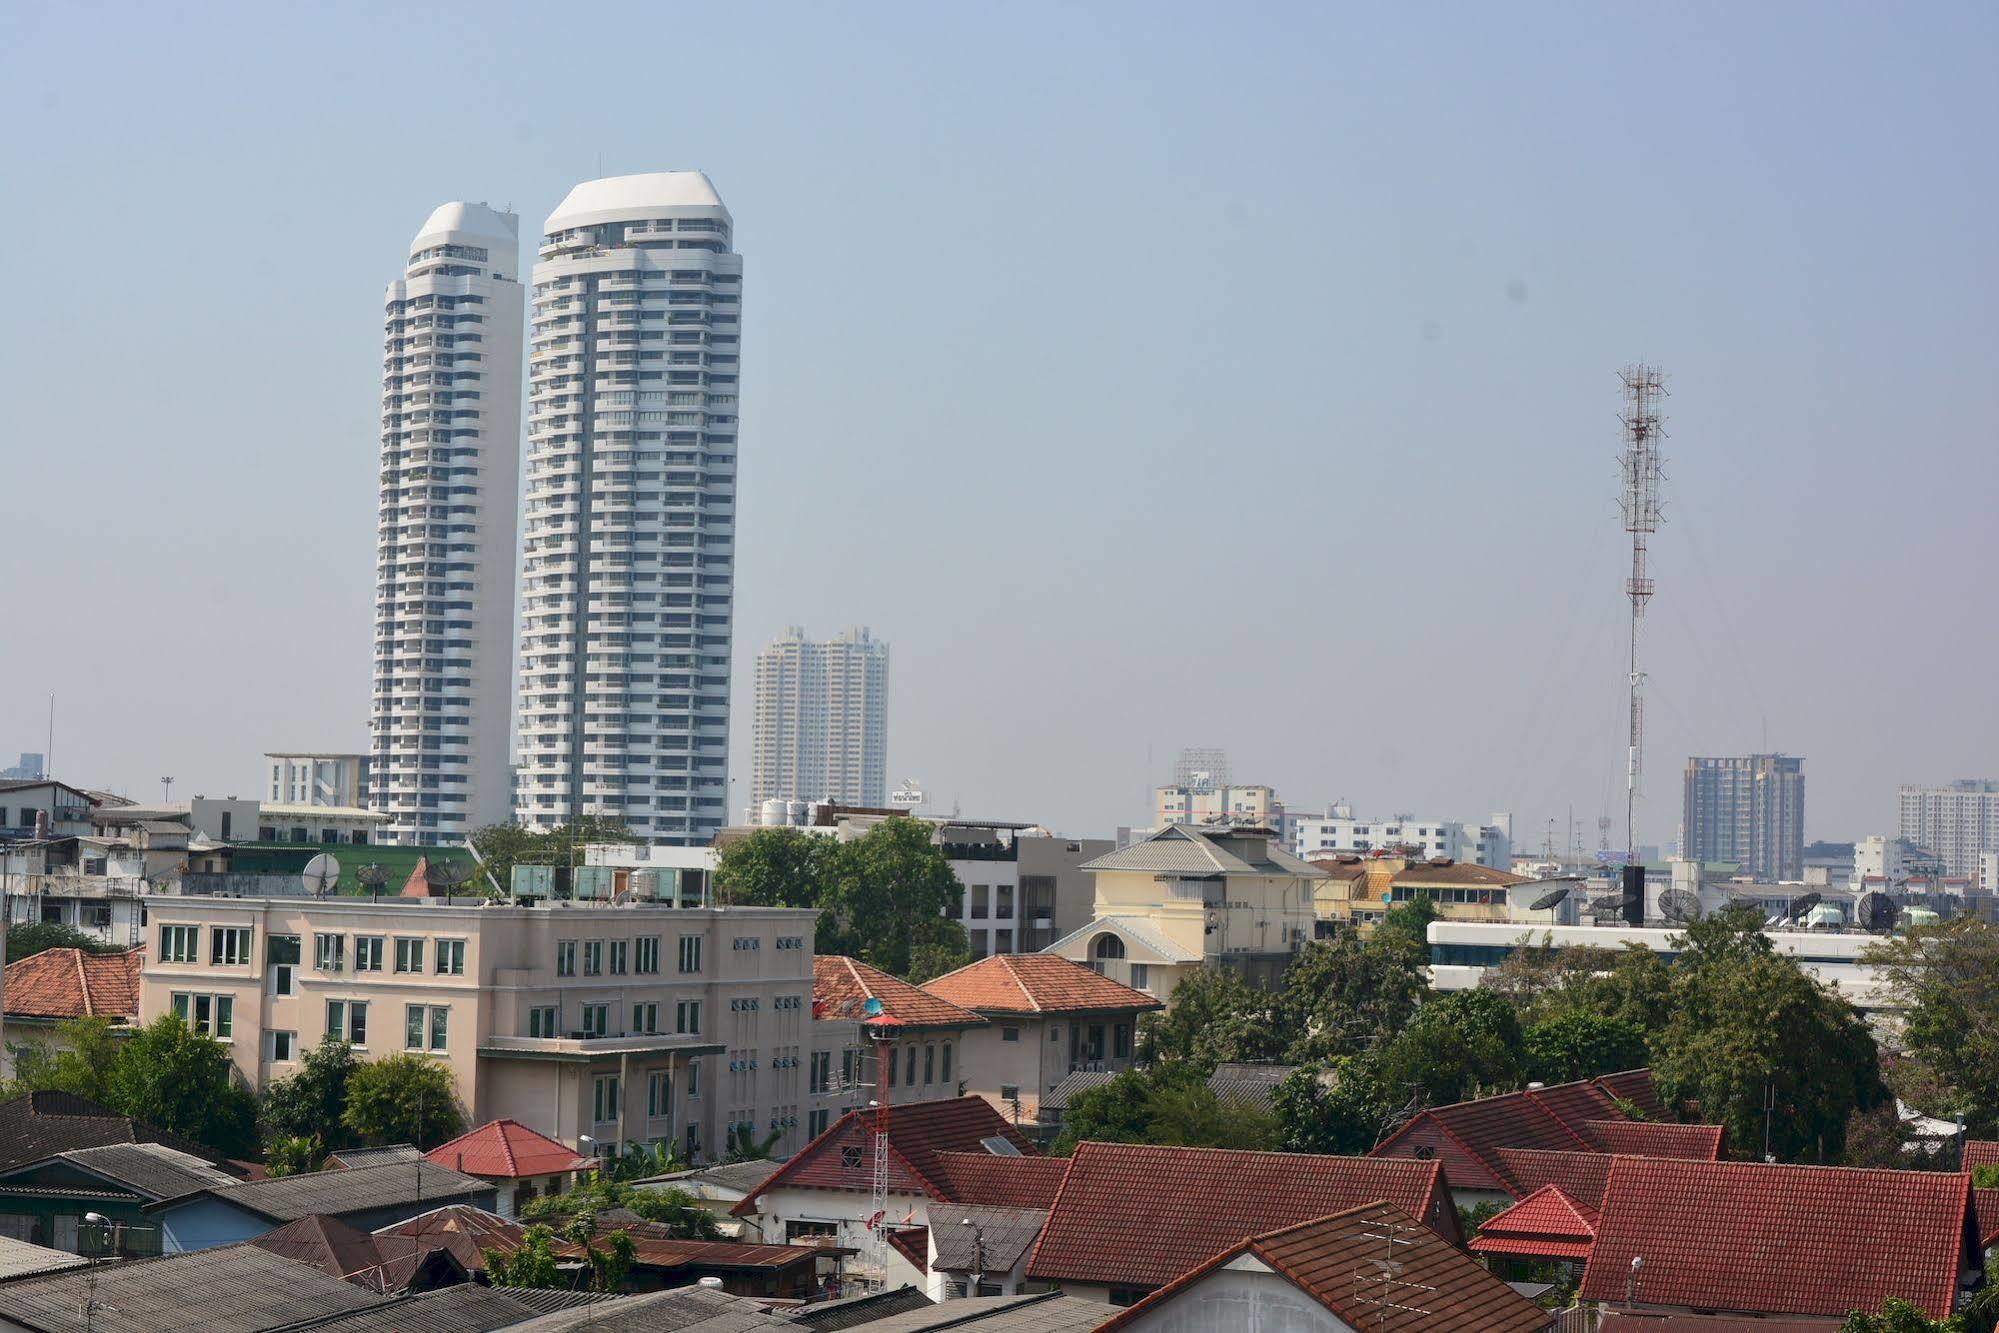 Adamaz House Hotel Bangkok Exterior photo